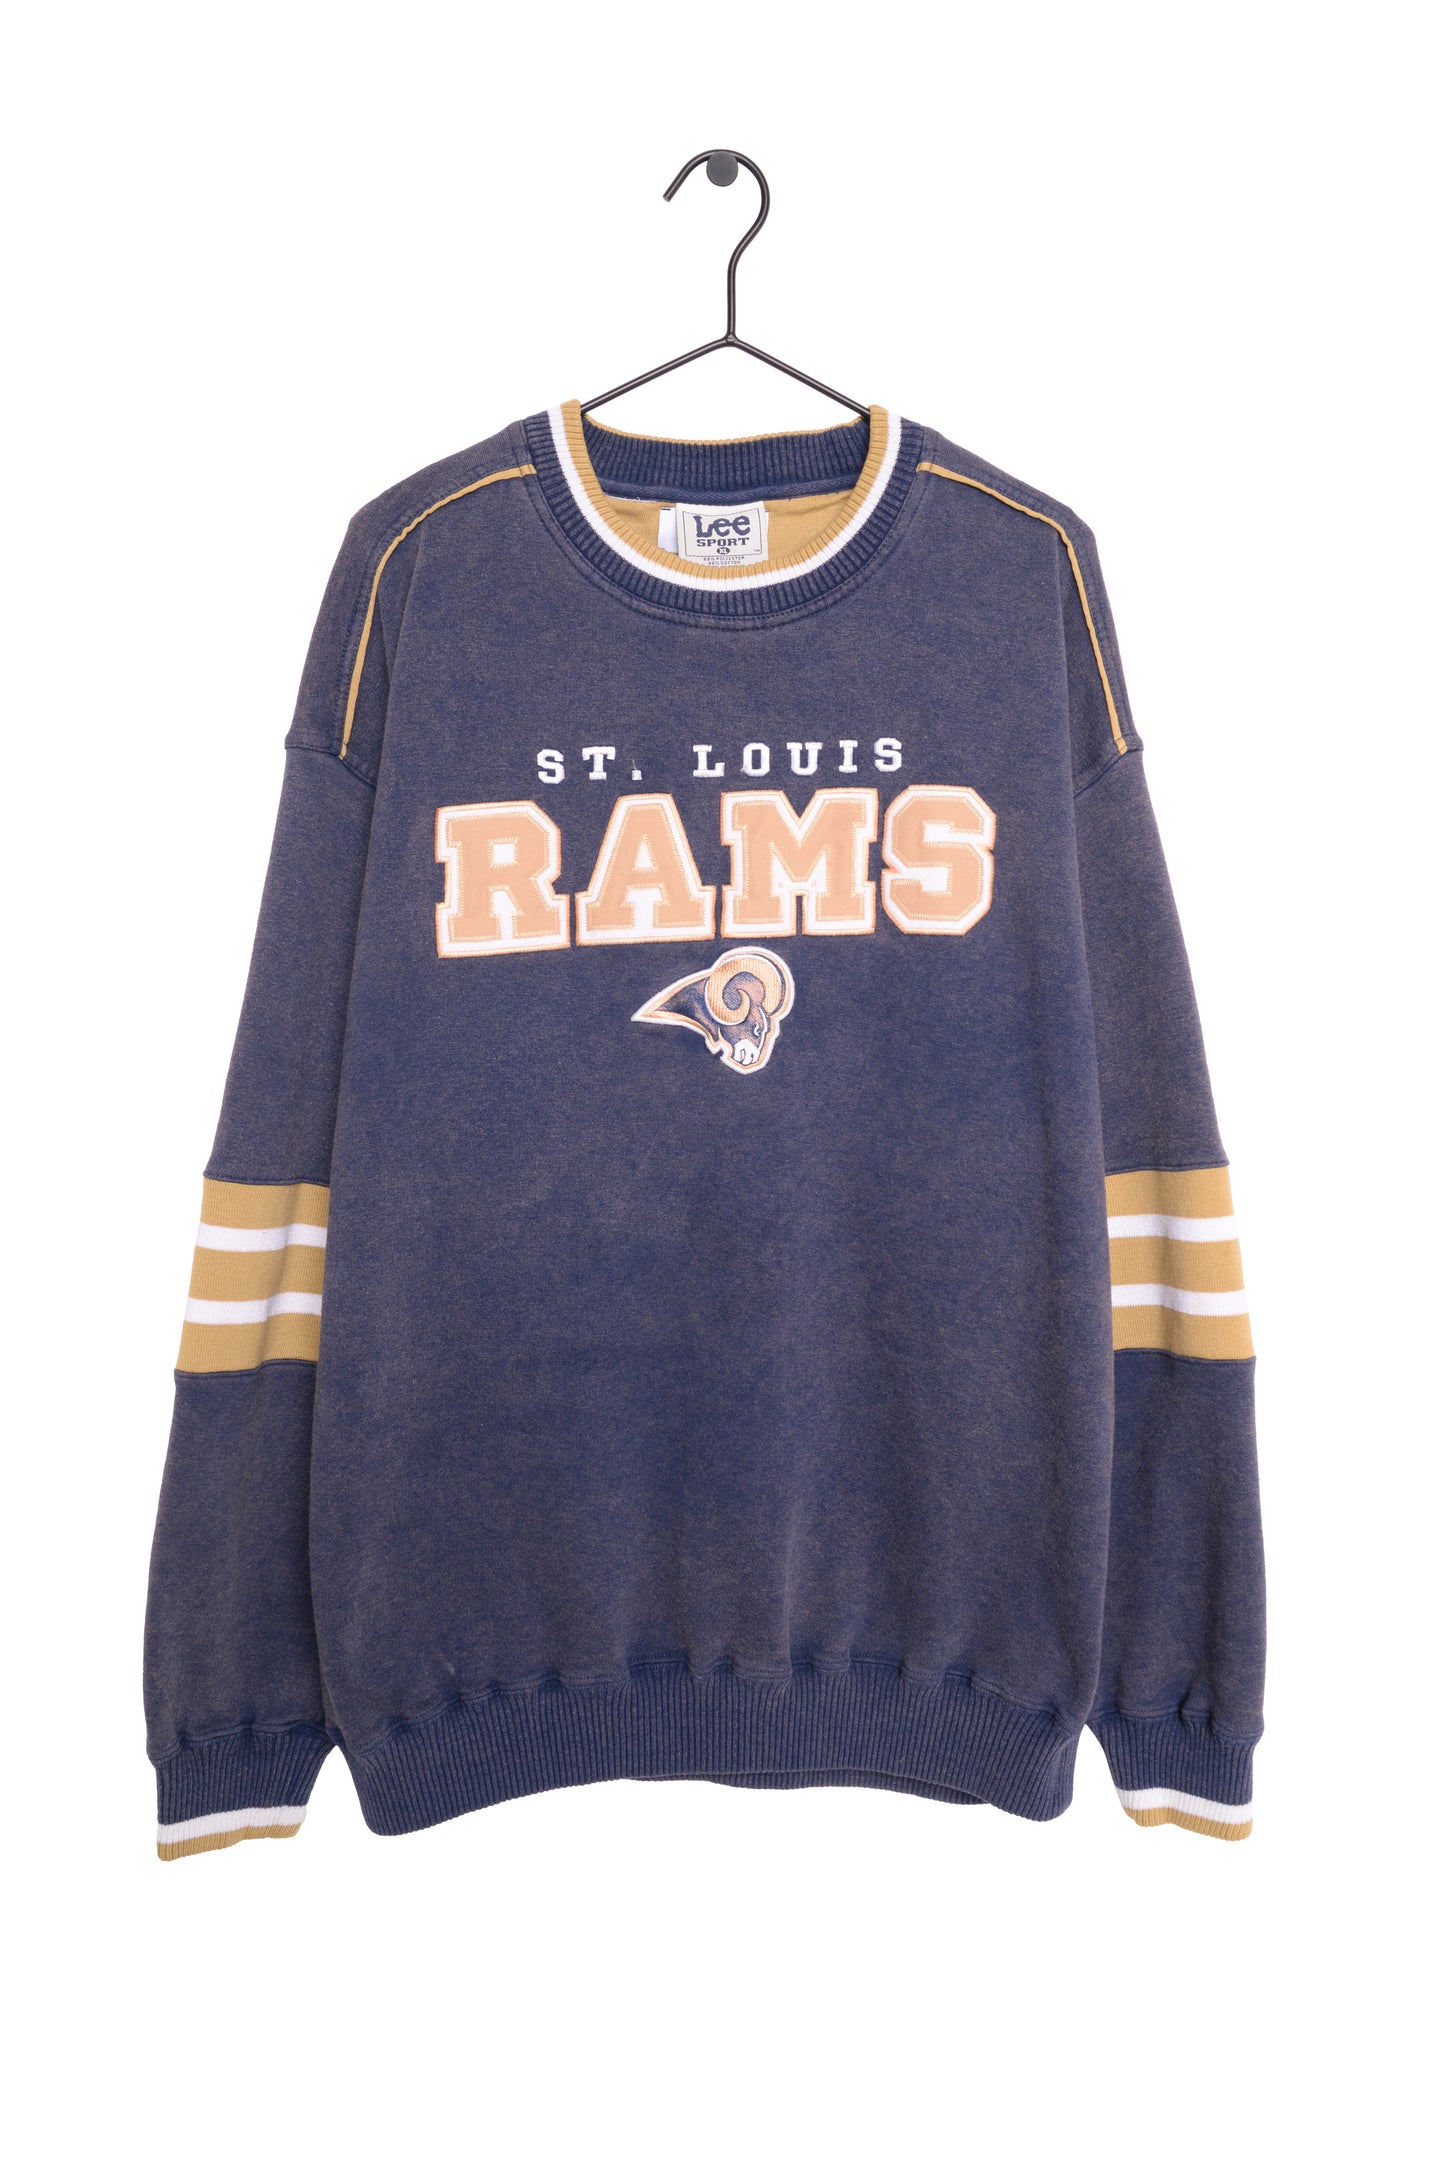 Vintage St. Louis Rams American Football White Sweatshirt 